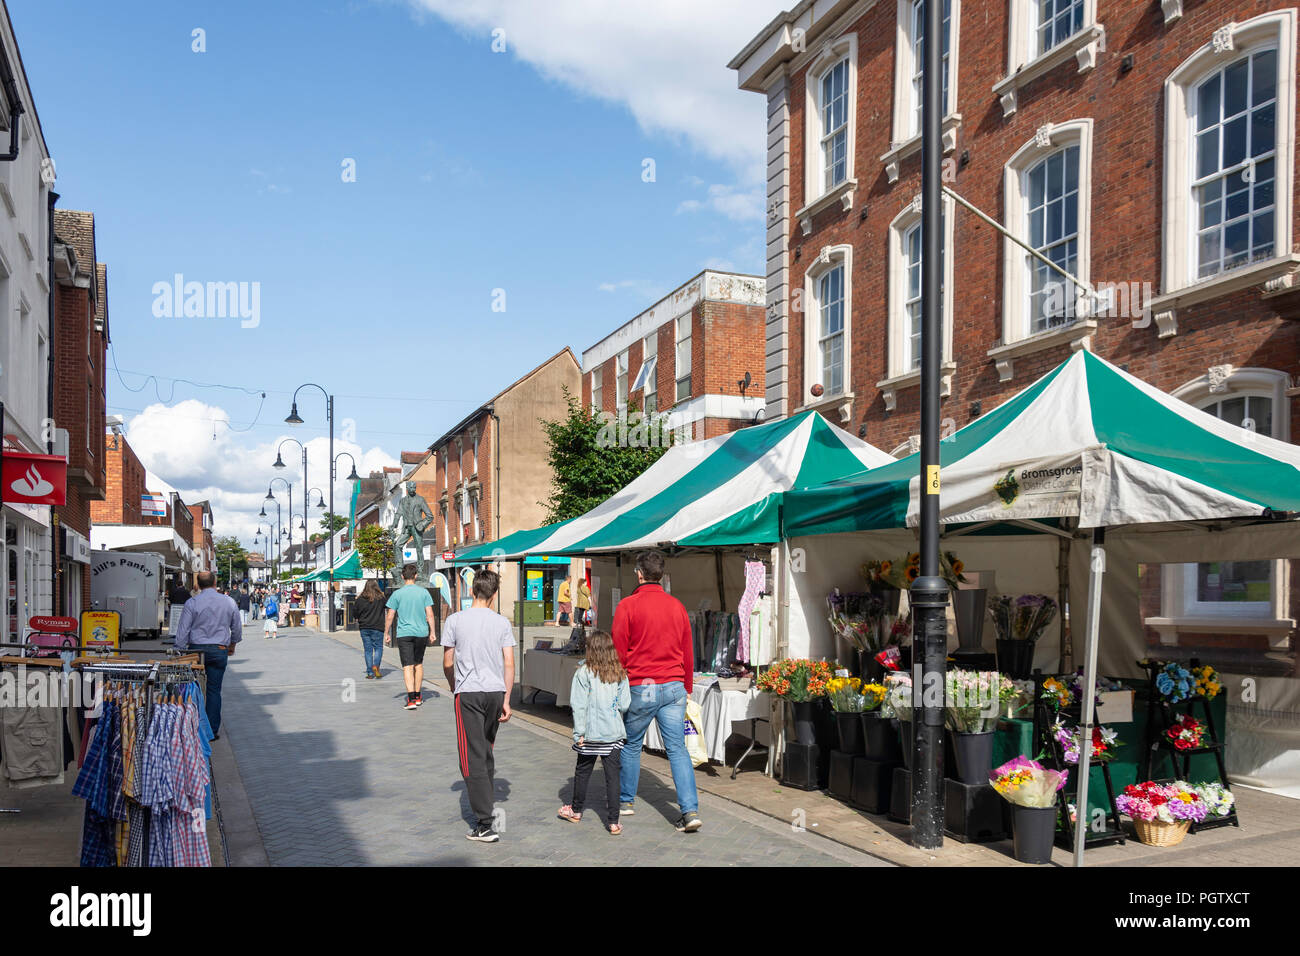 Les étals du marché, High Street, Worcester, Worcestershire, Angleterre, Royaume-Uni Banque D'Images